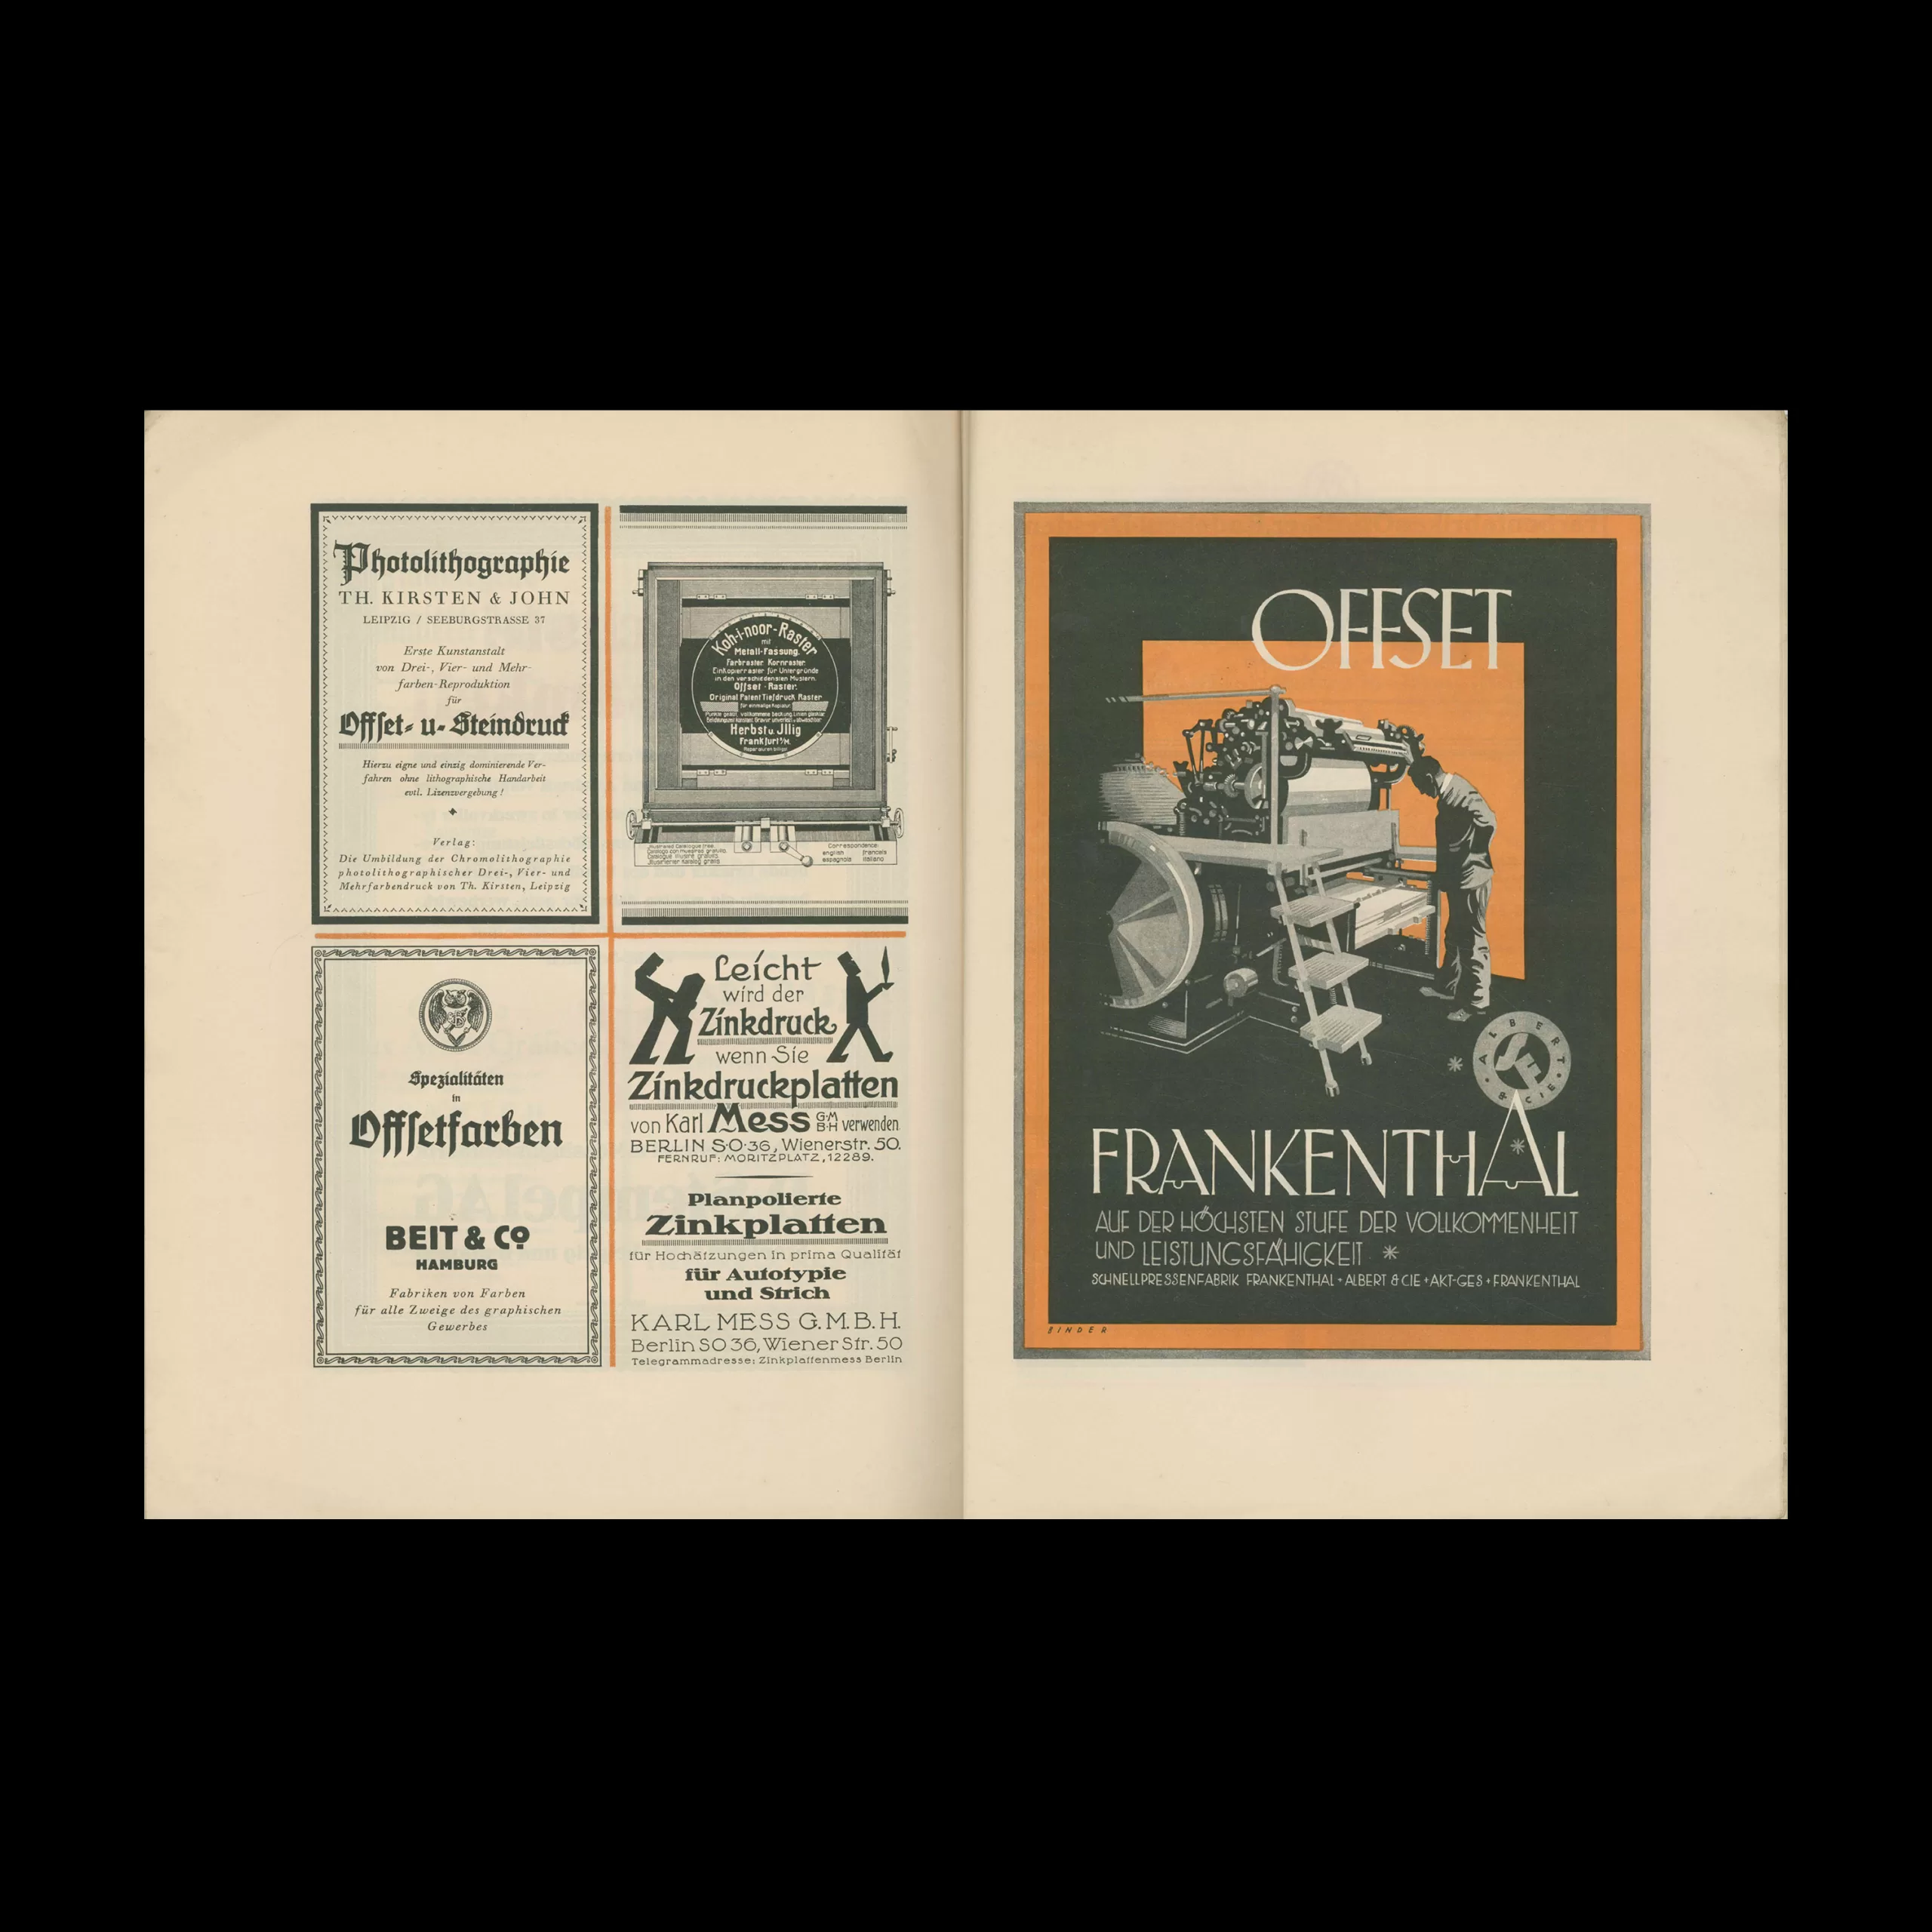 Offset Buch und Werbekunst, Der Offset-Verlag G.M.B.H., Leipzig, 1925